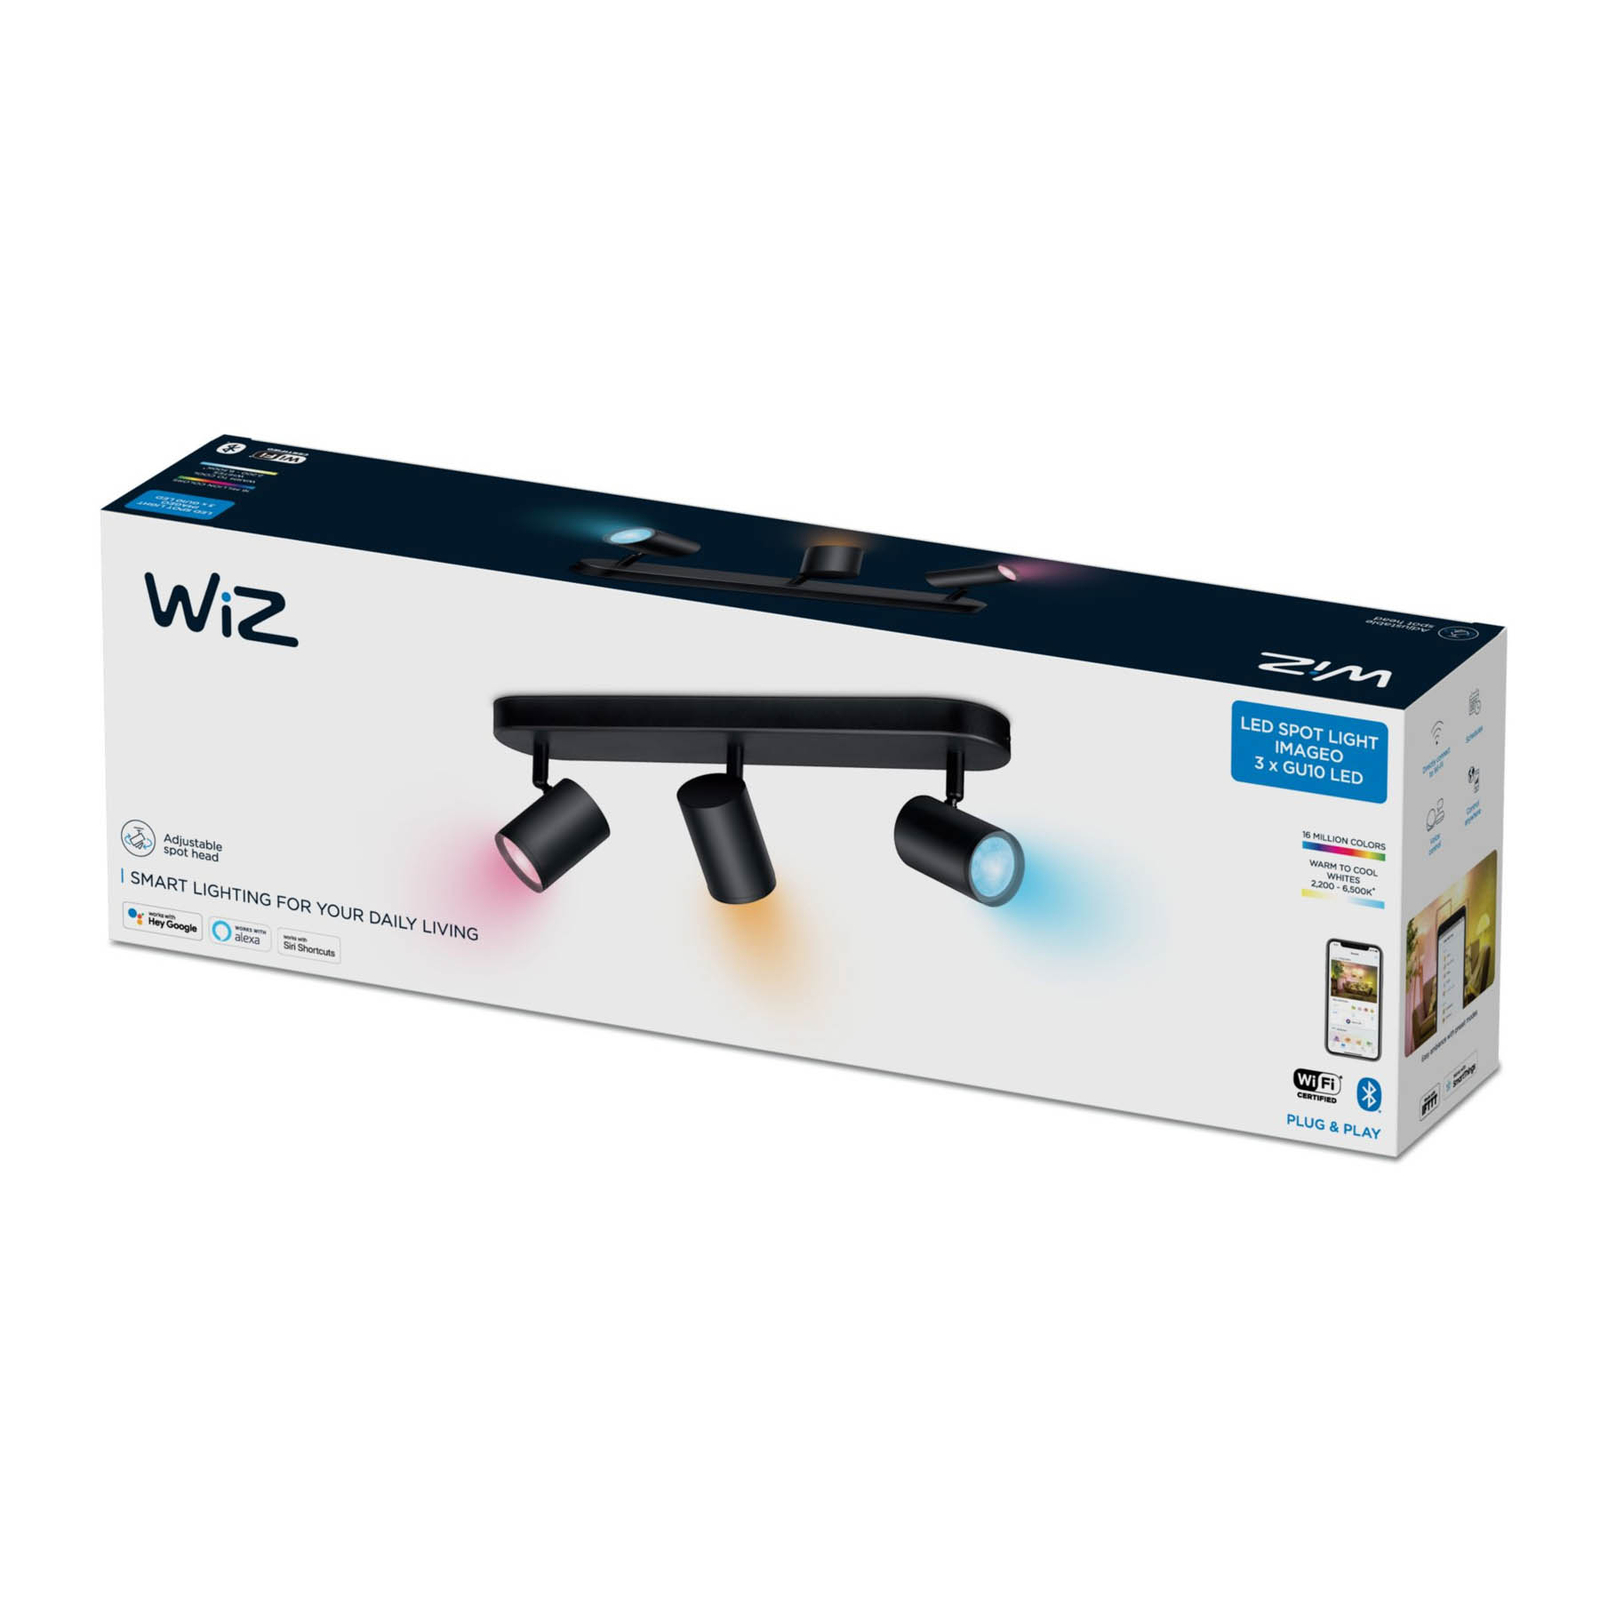 WiZ Imageo LED reflektor 3-fényű RGB, fekete színben